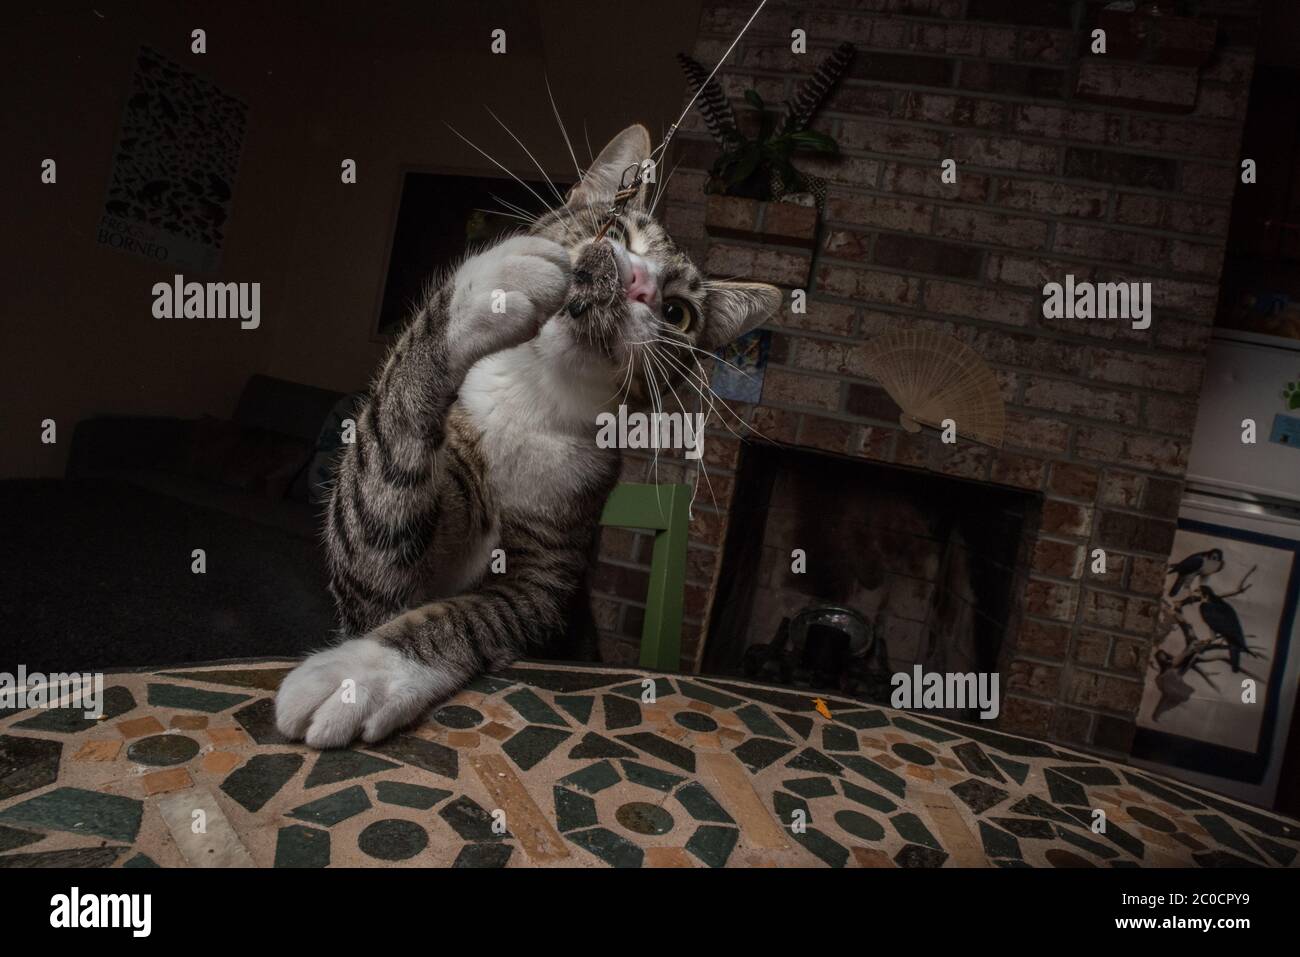 Un chat d'animal de compagnie joue avec un jouet de souris sur une corde. Banque D'Images